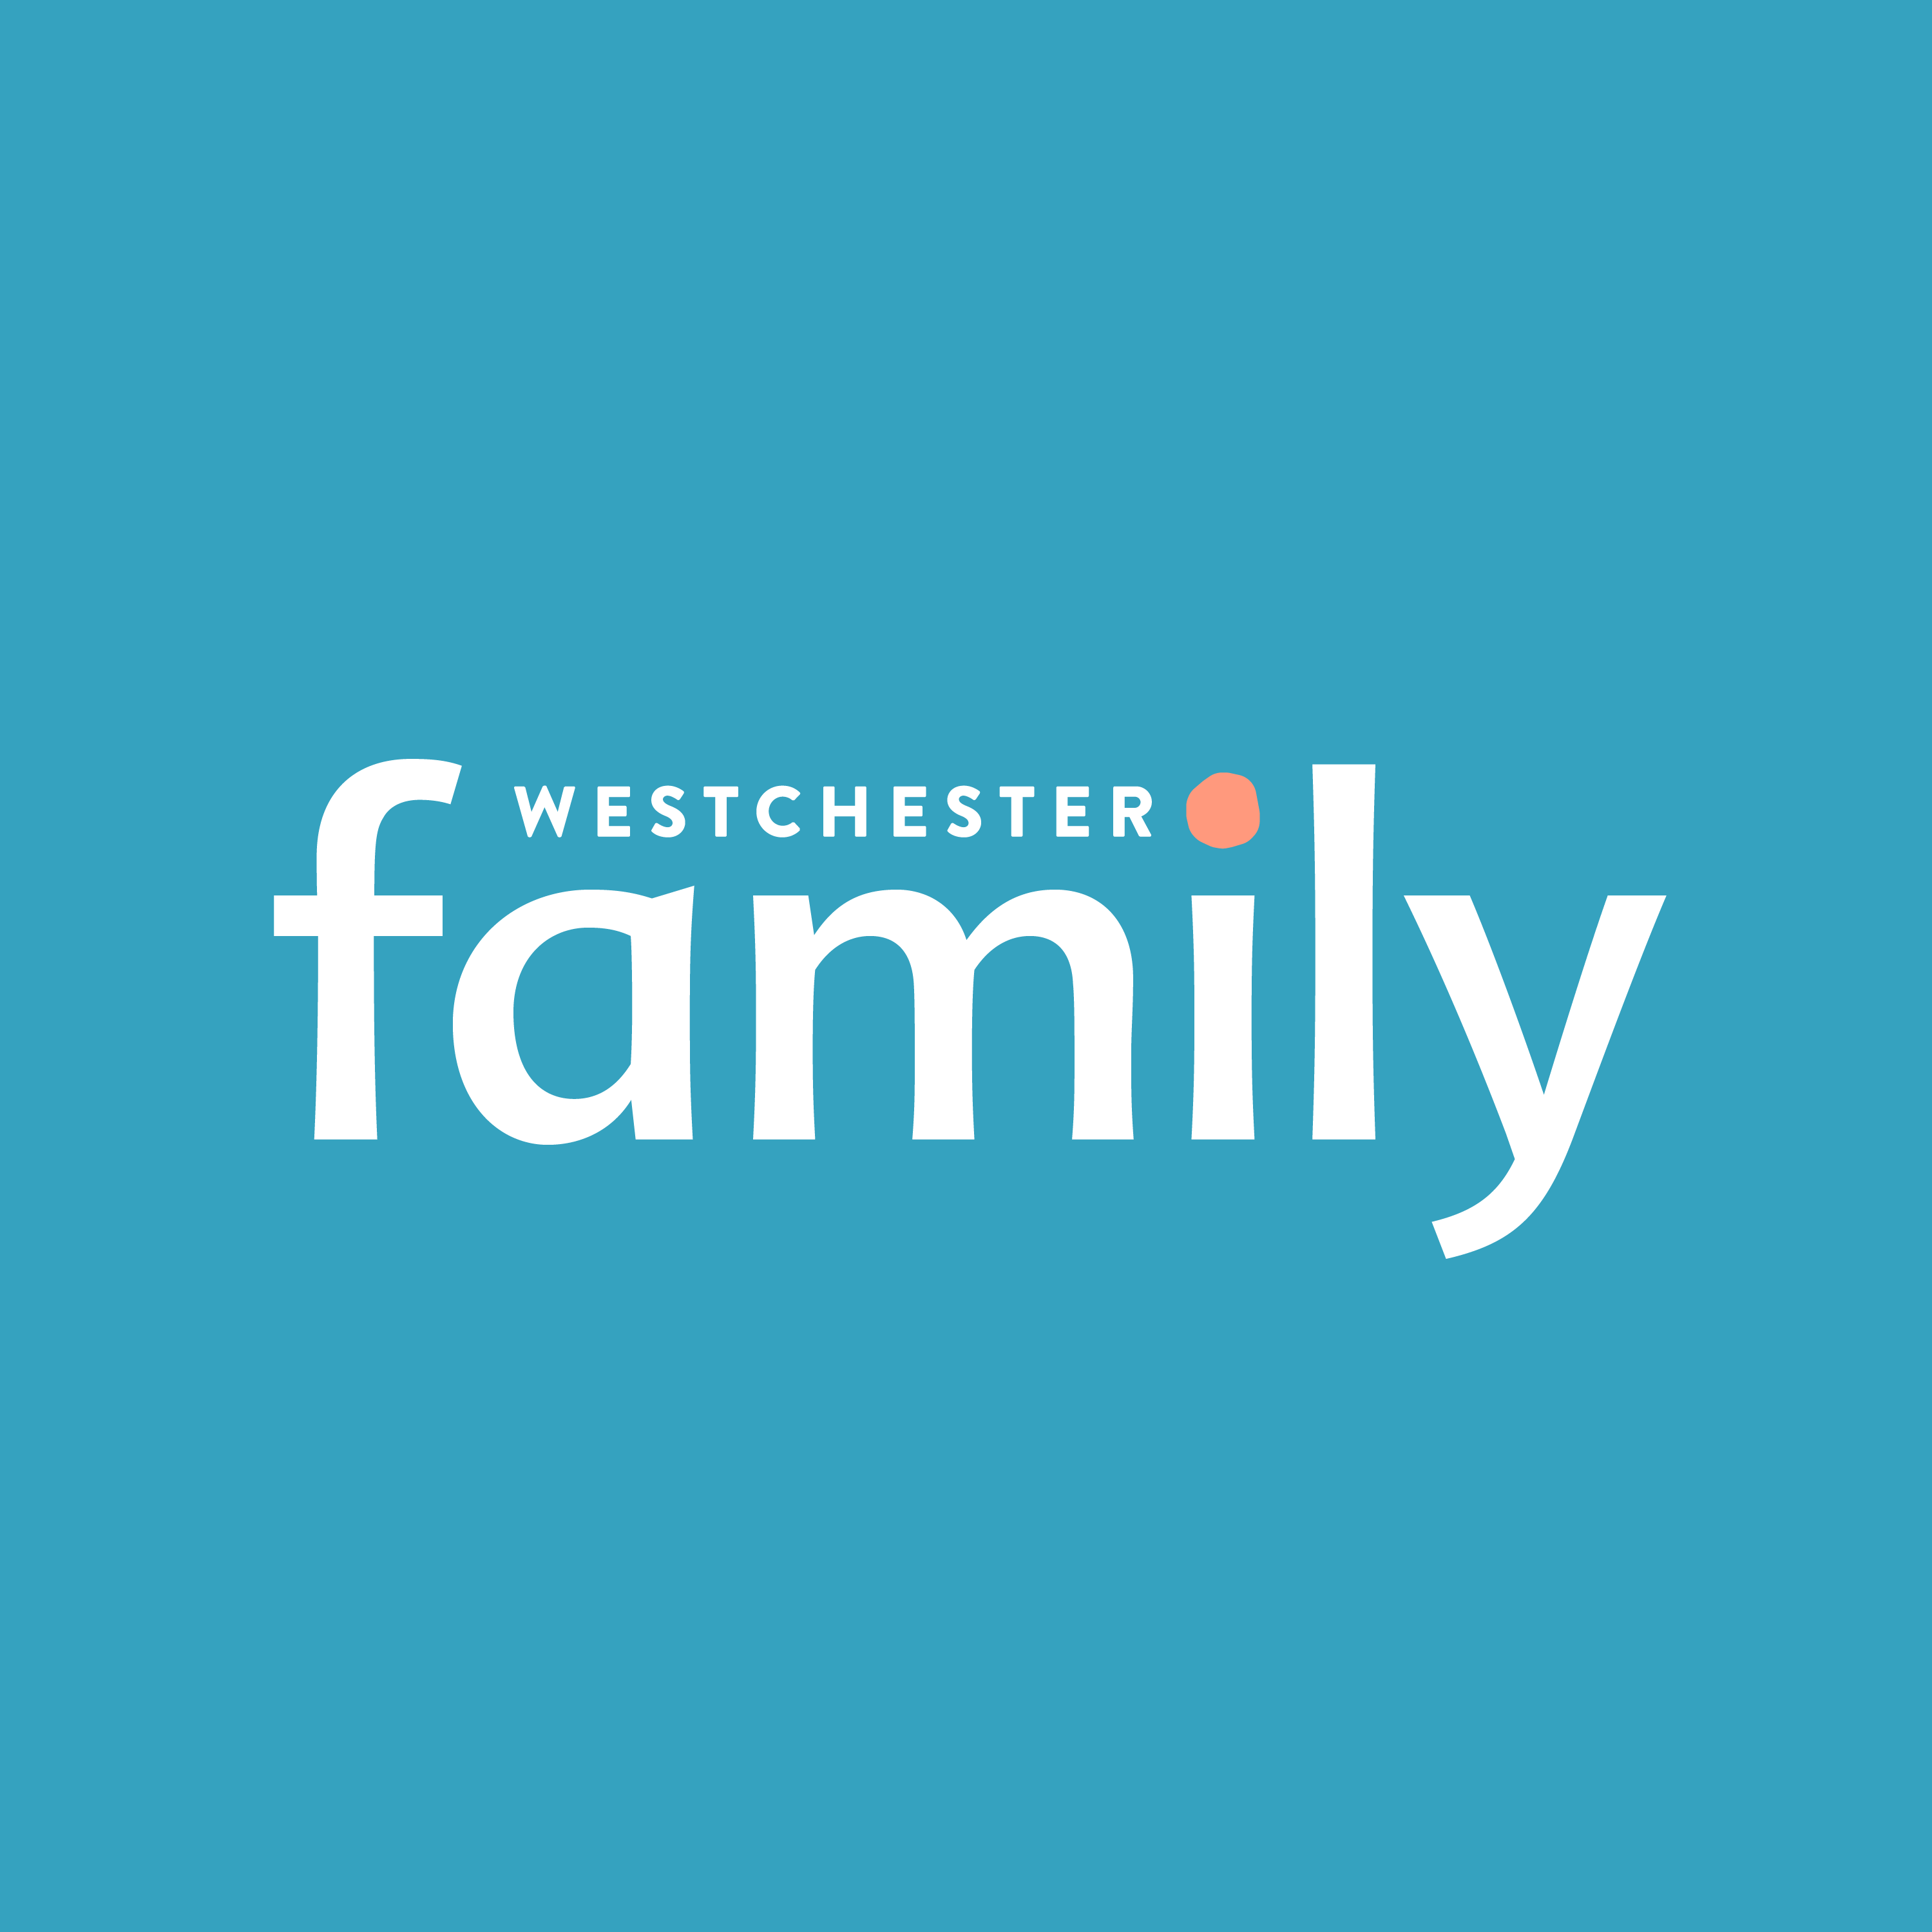 (c) Westchesterfamily.com